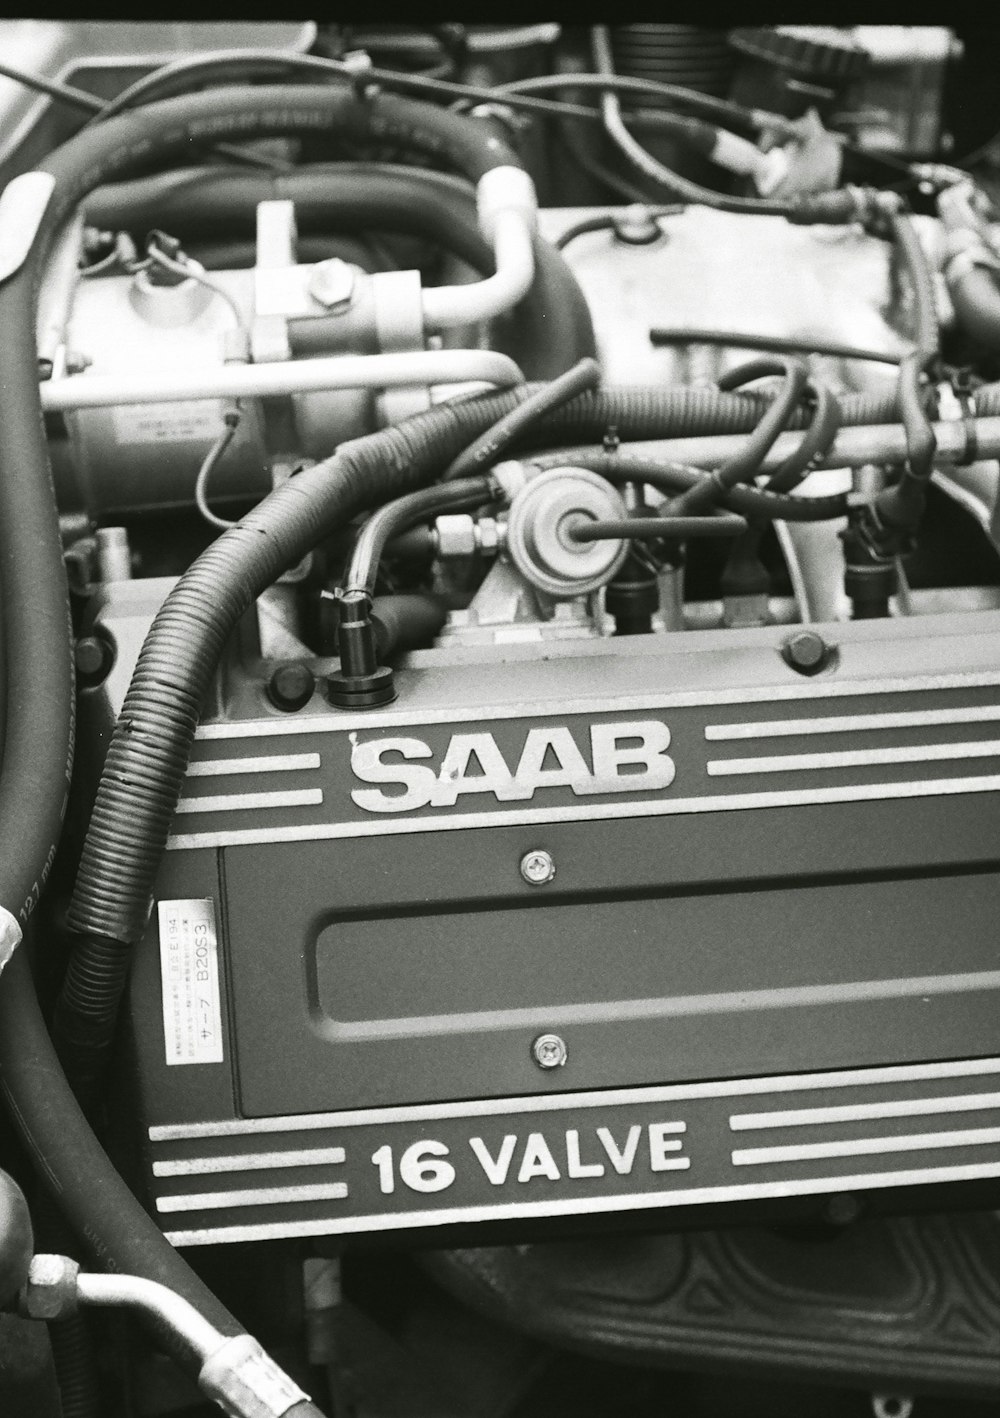 Une photo en noir et blanc d’un moteur Saab